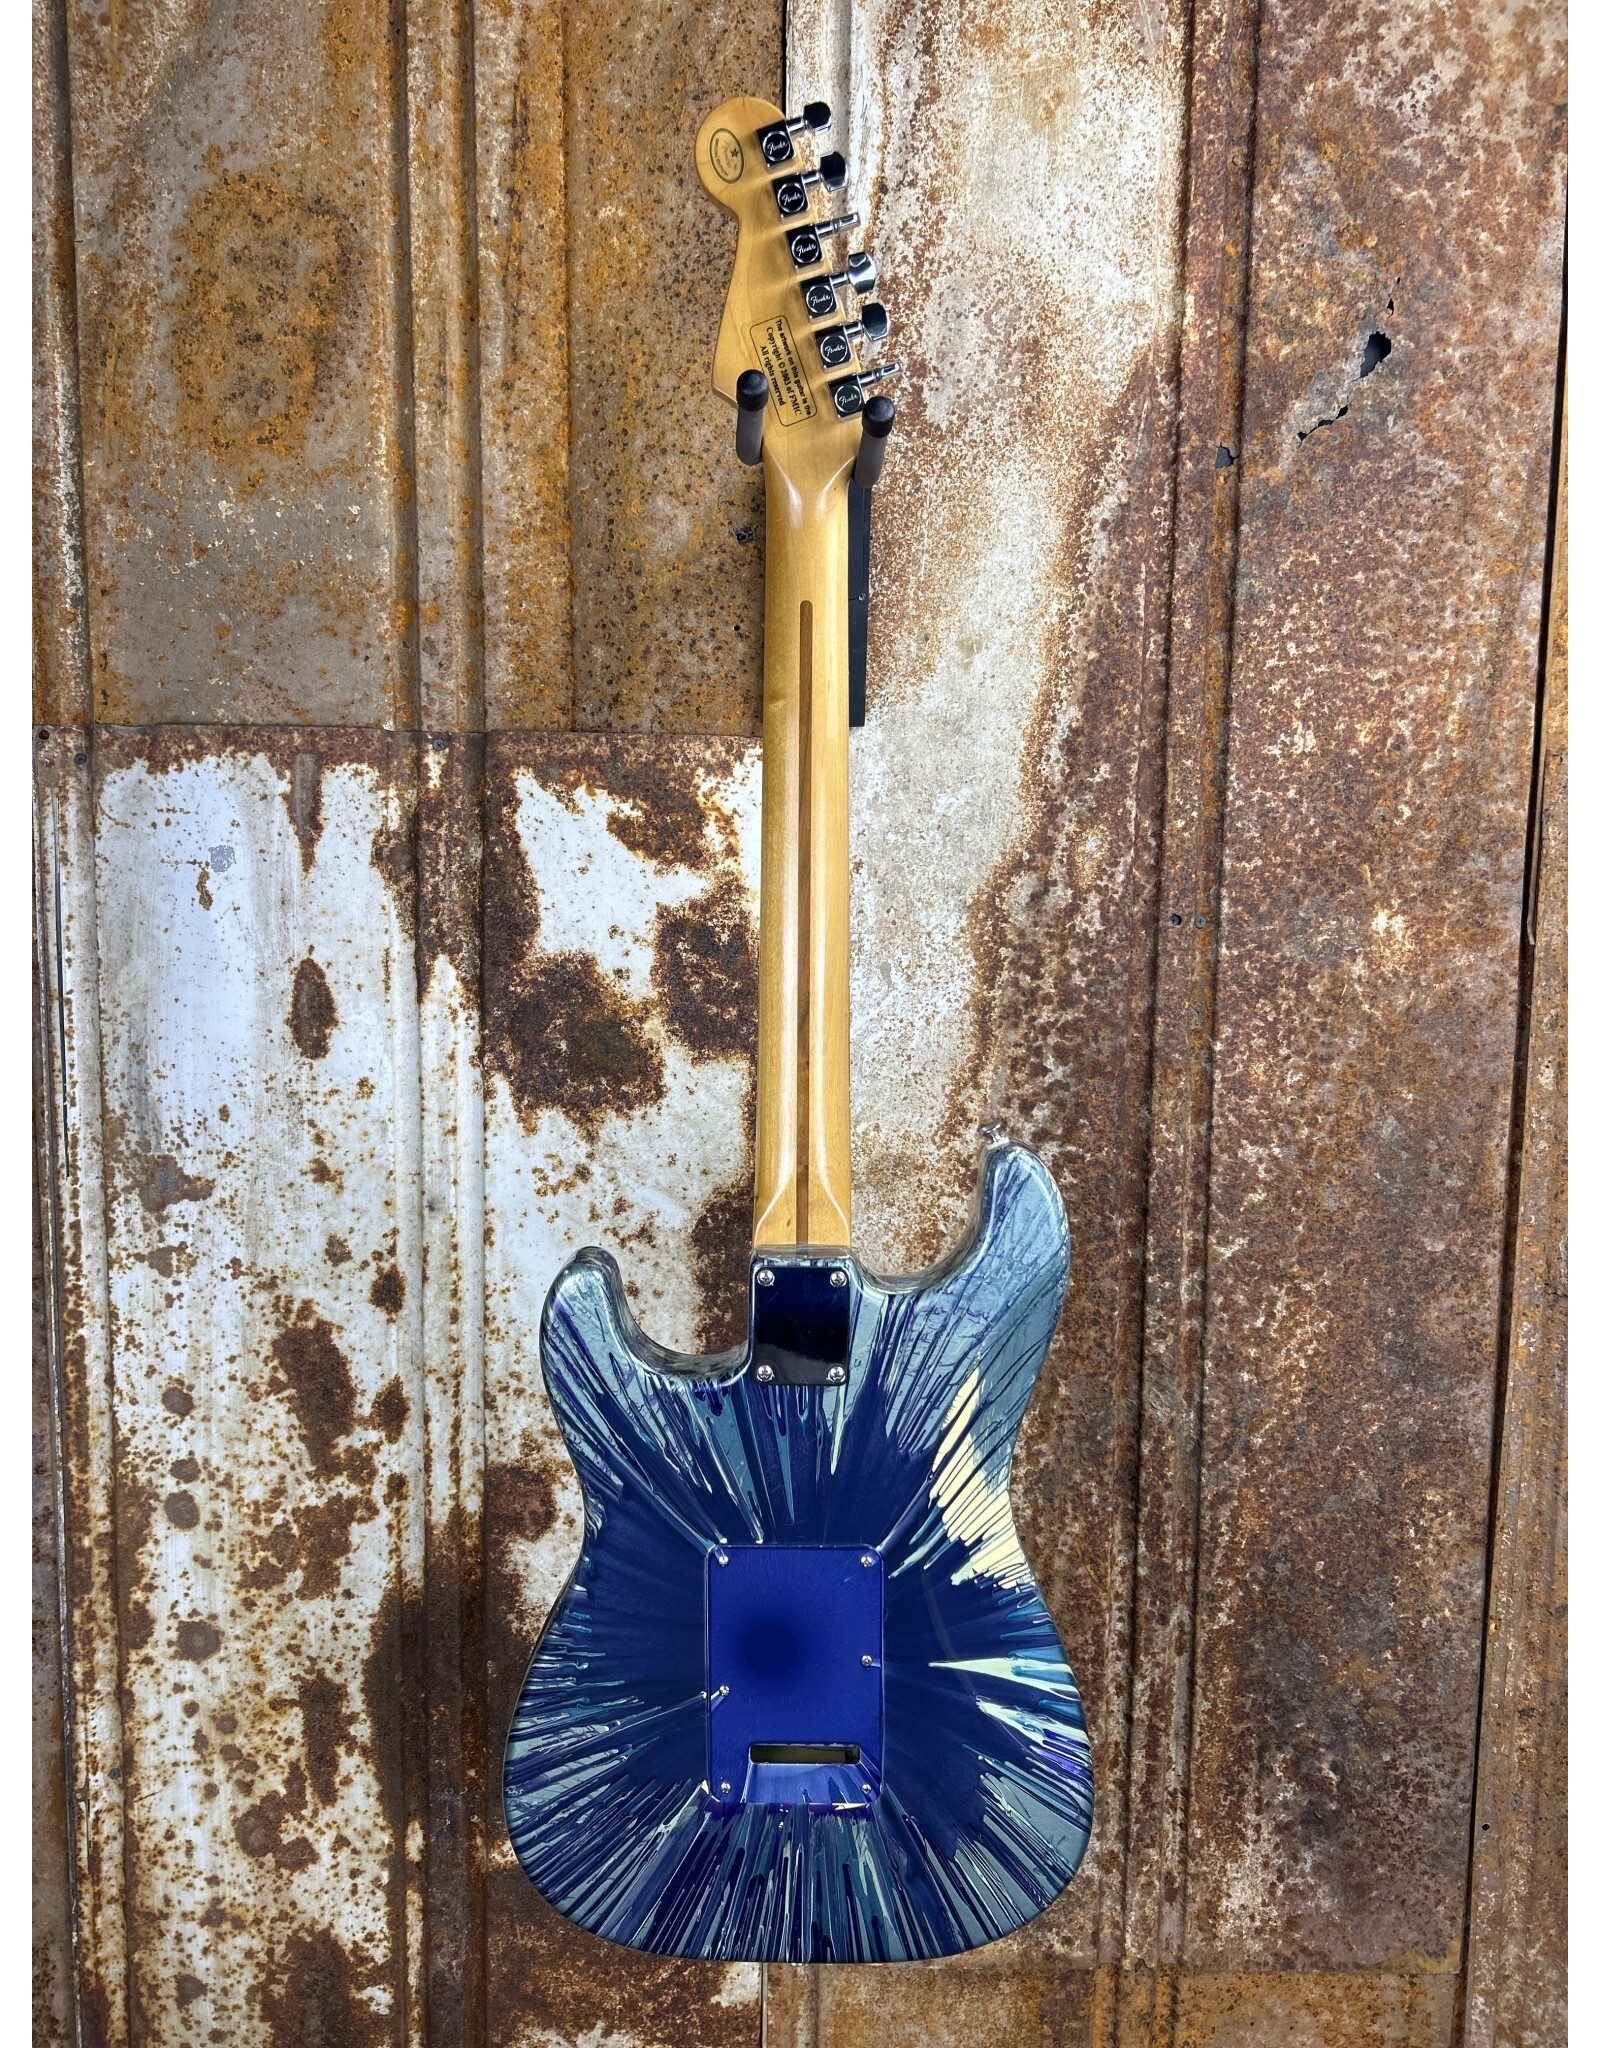 Fender Fender FSR Splattercaster Standard Stratocaster 2003 Midnight Blue Swirl over Olympic White (Used)